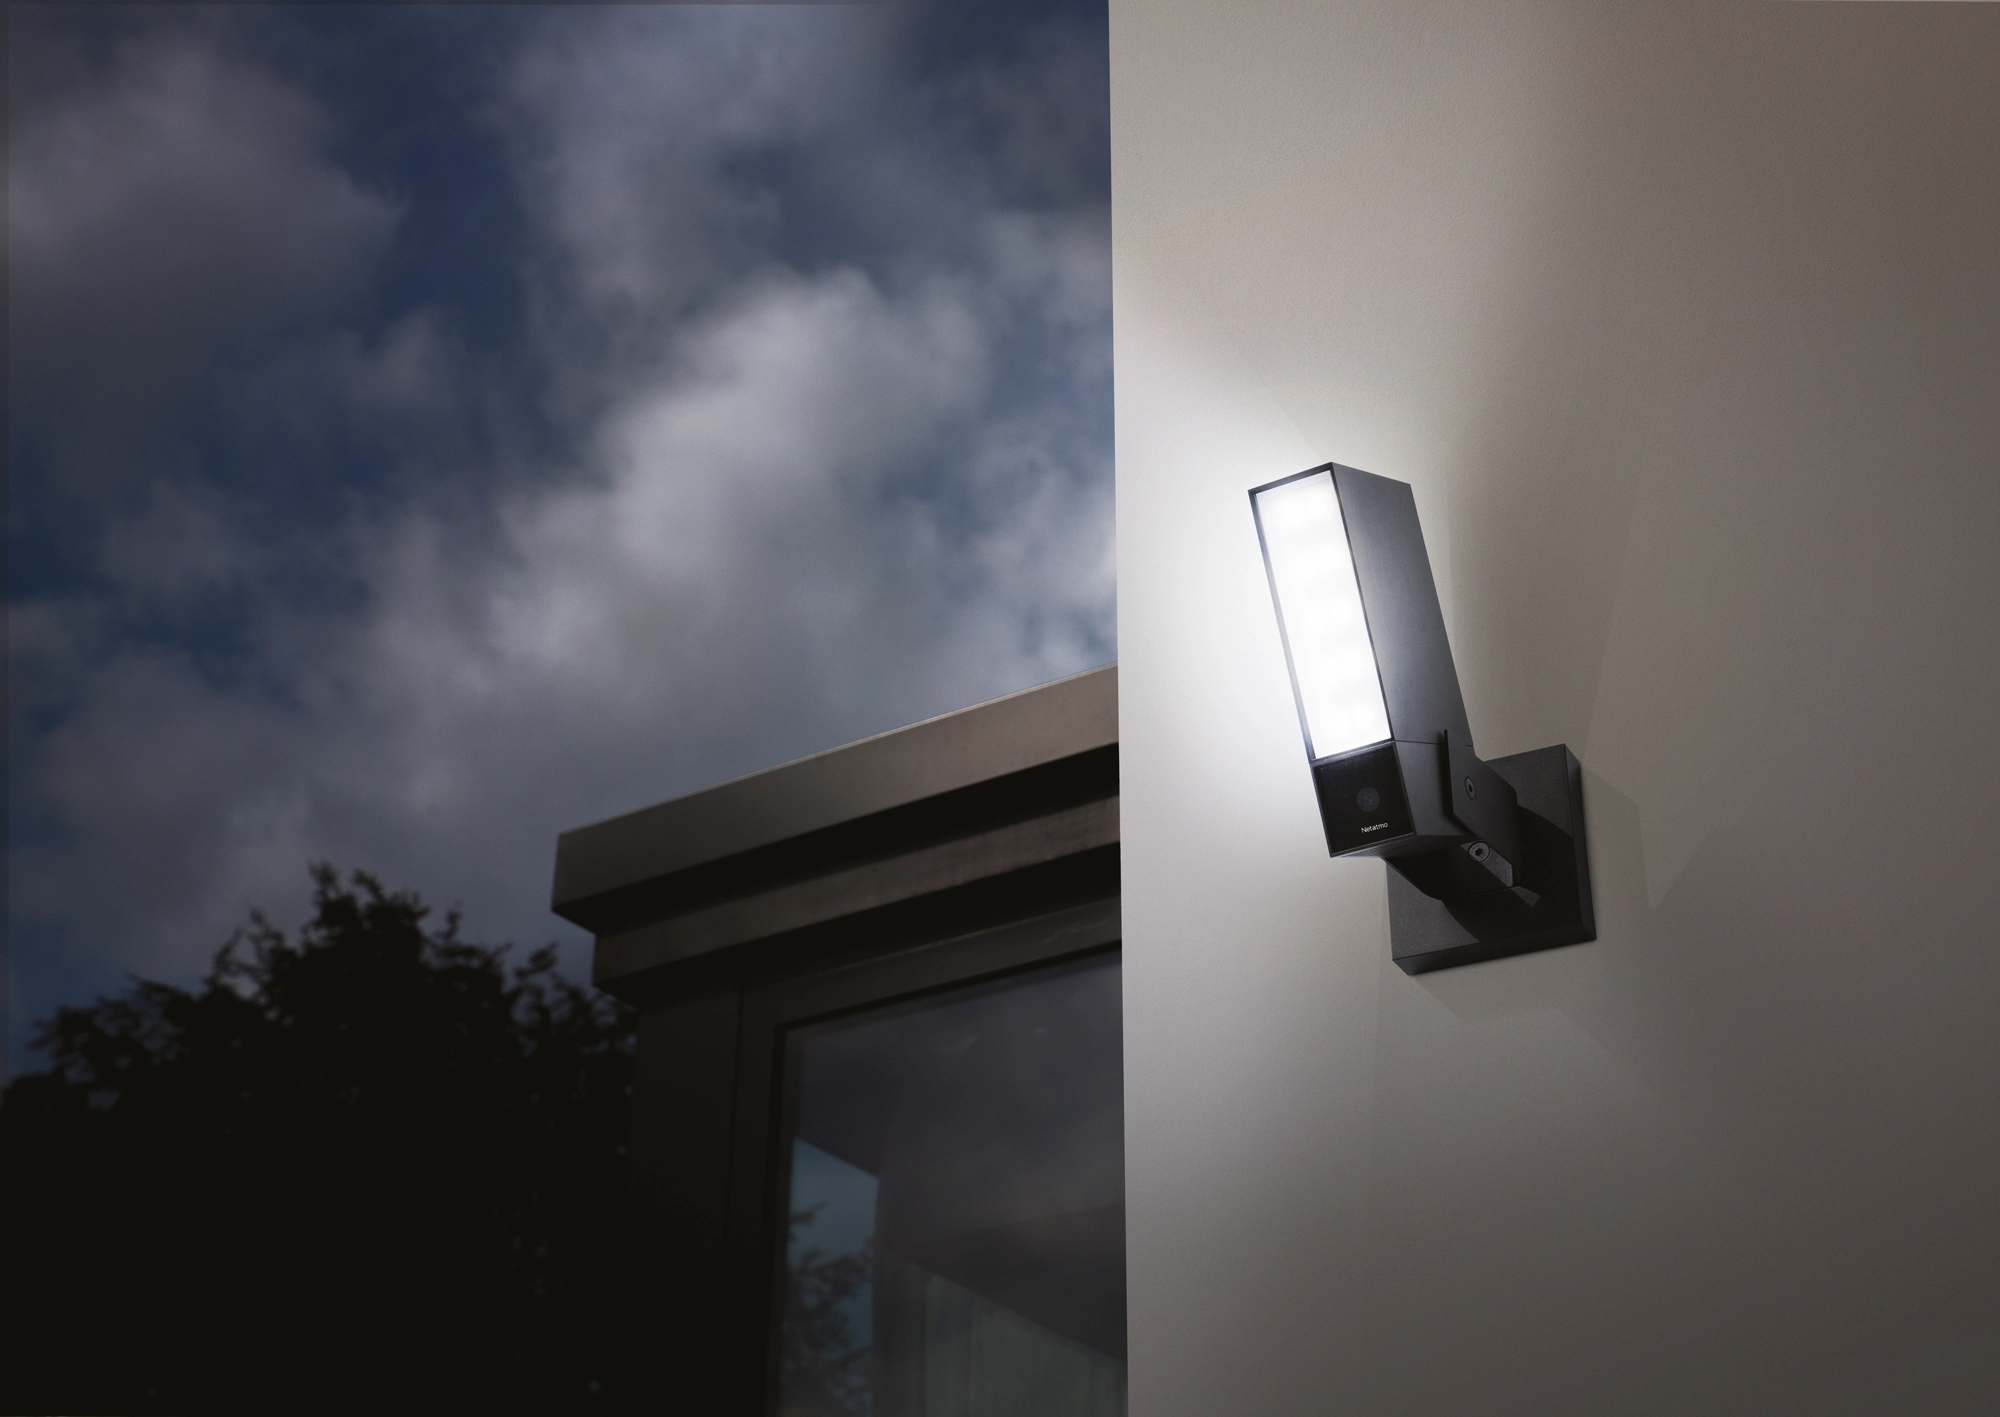 Thermostat Connecté Smarther avec Netatmo de Surface Blanc - GroupSumi